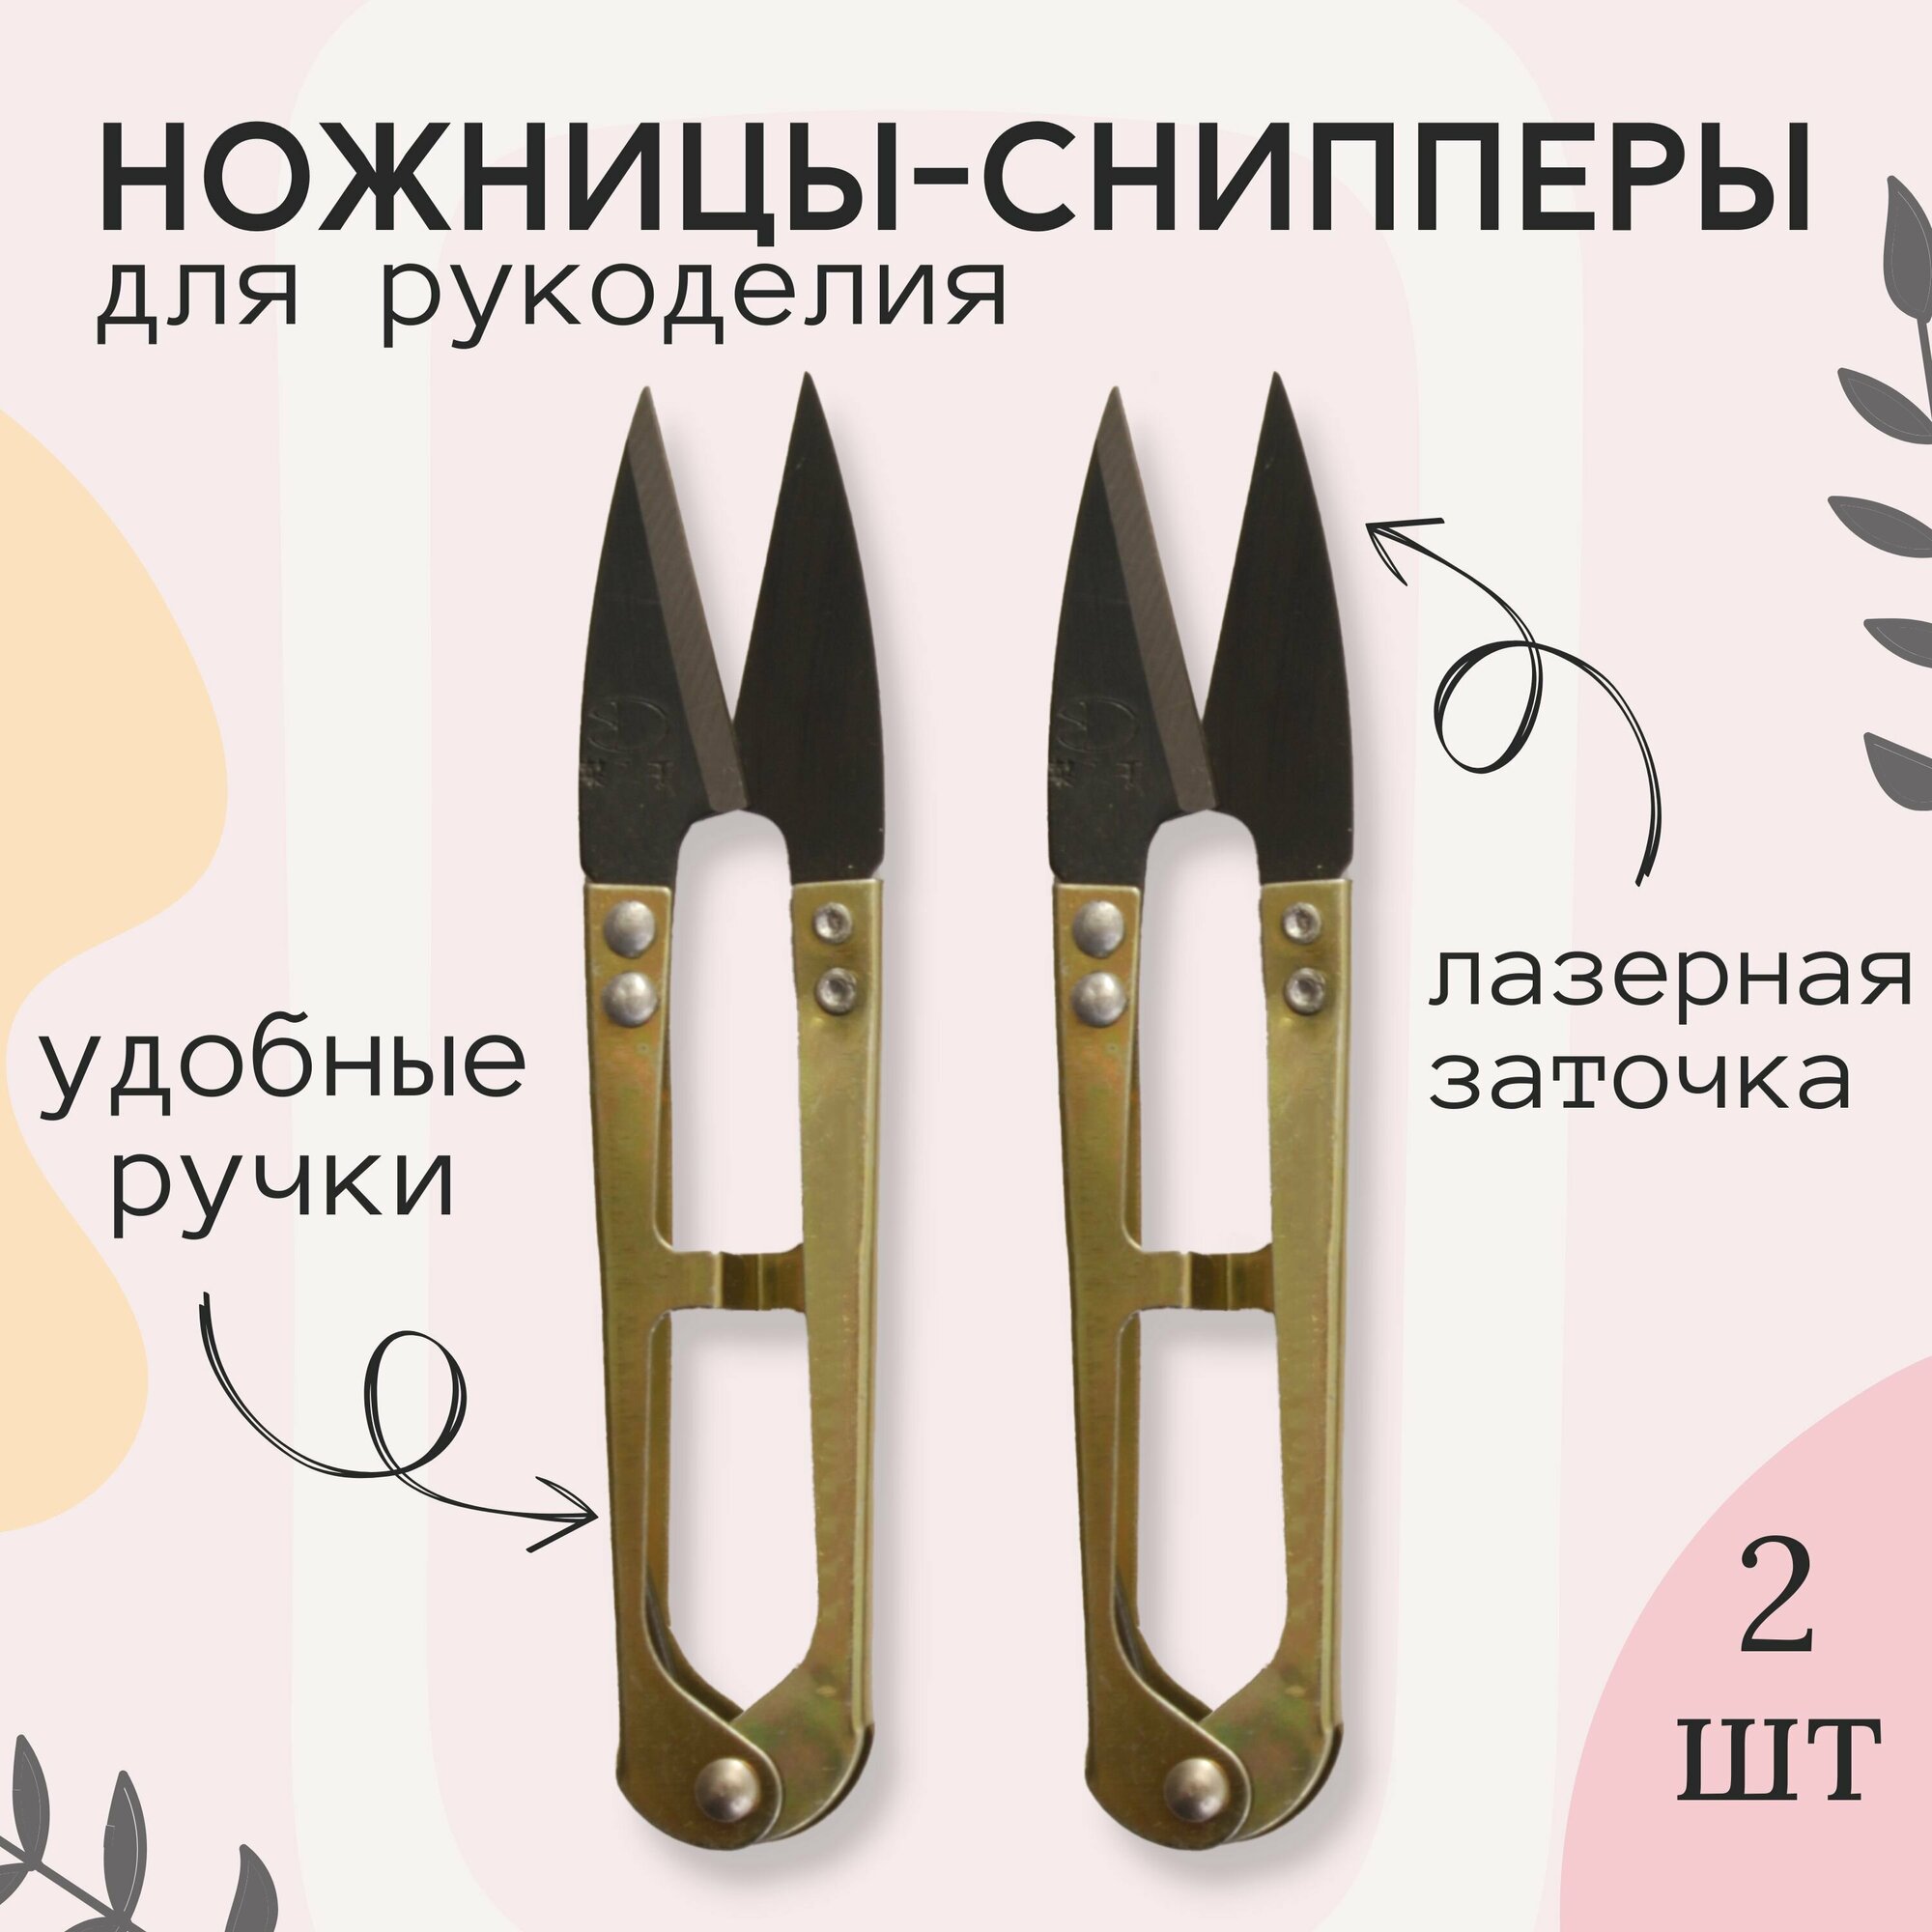 Ножницы-снипперы для шитья и рукоделия, металл, длина 10,5 см, 2 шт